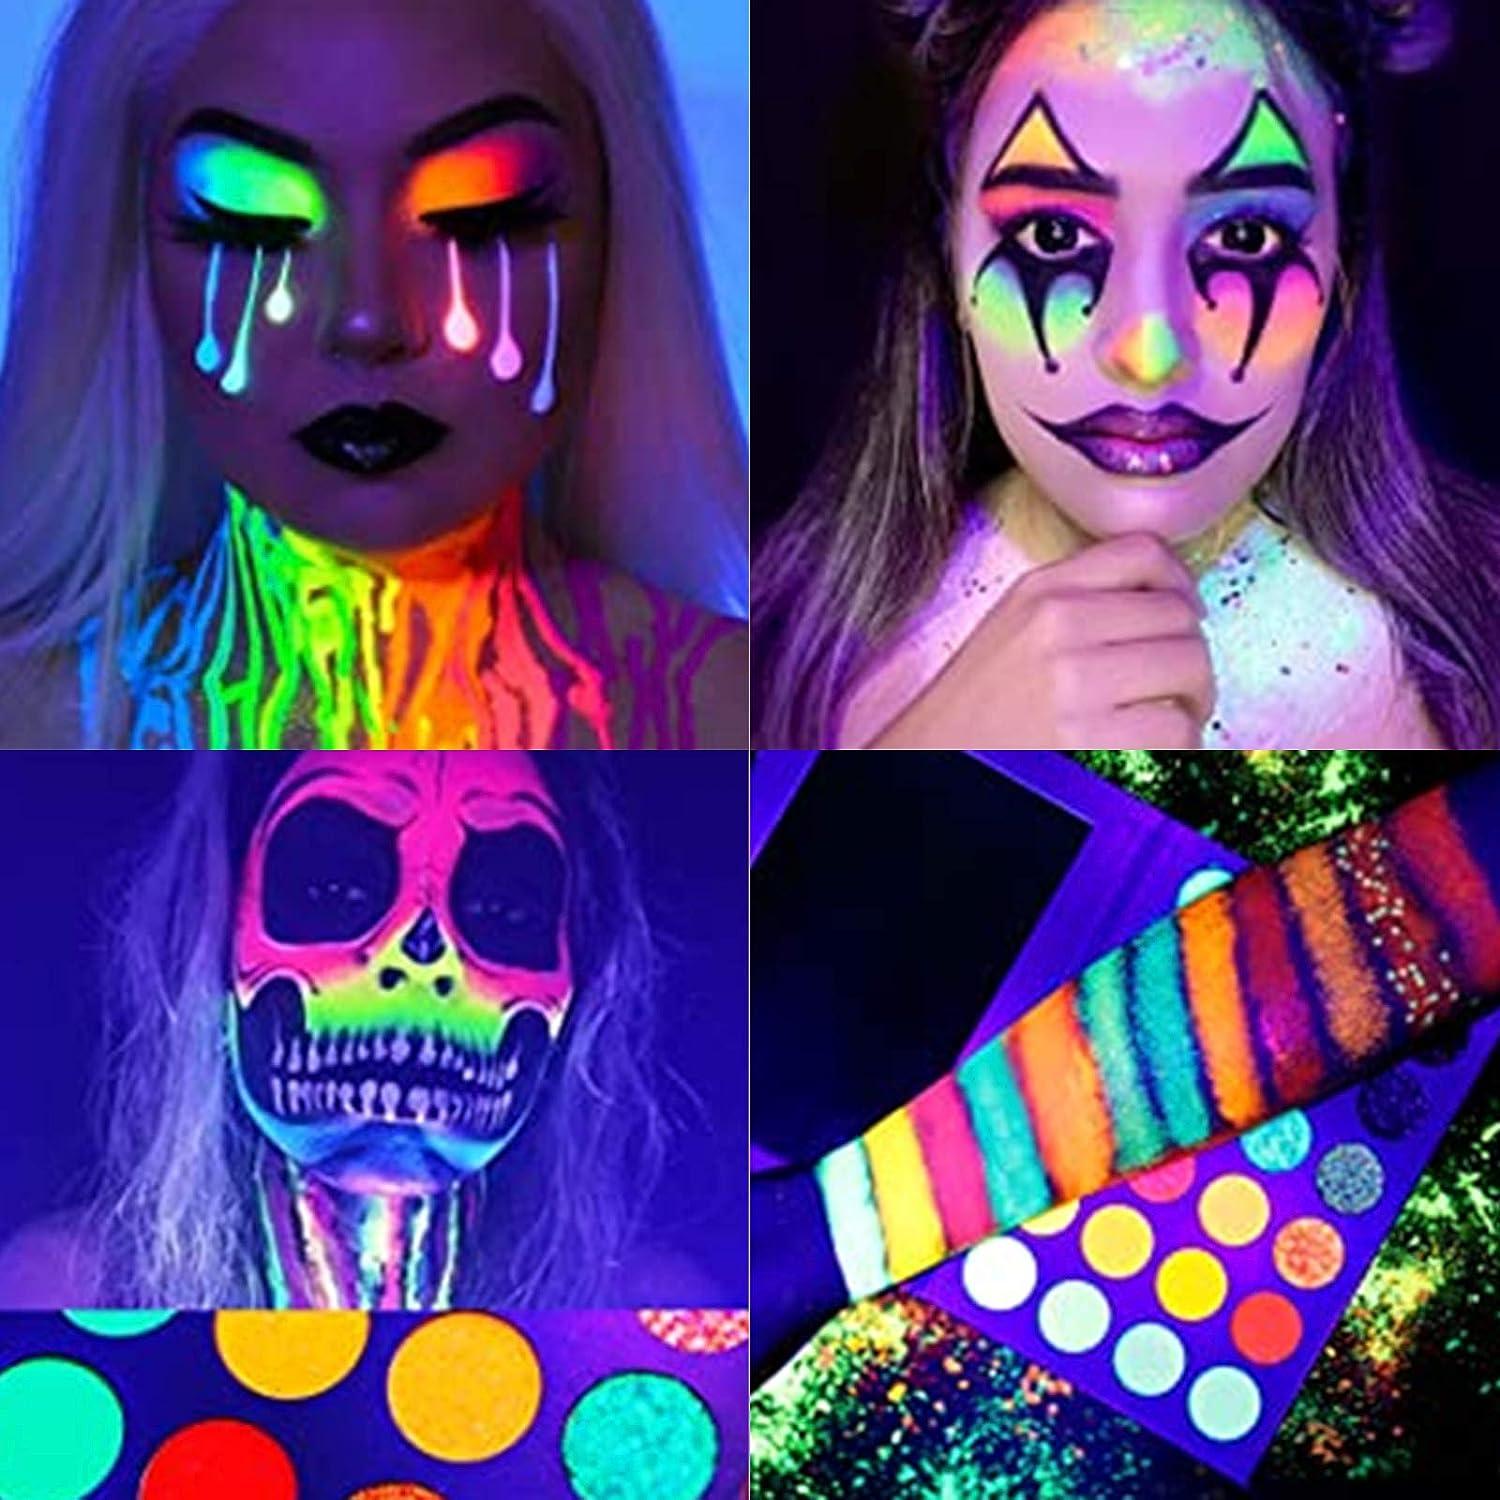 Glow-in-the-Dark Makeup Looks for Halloween 2020